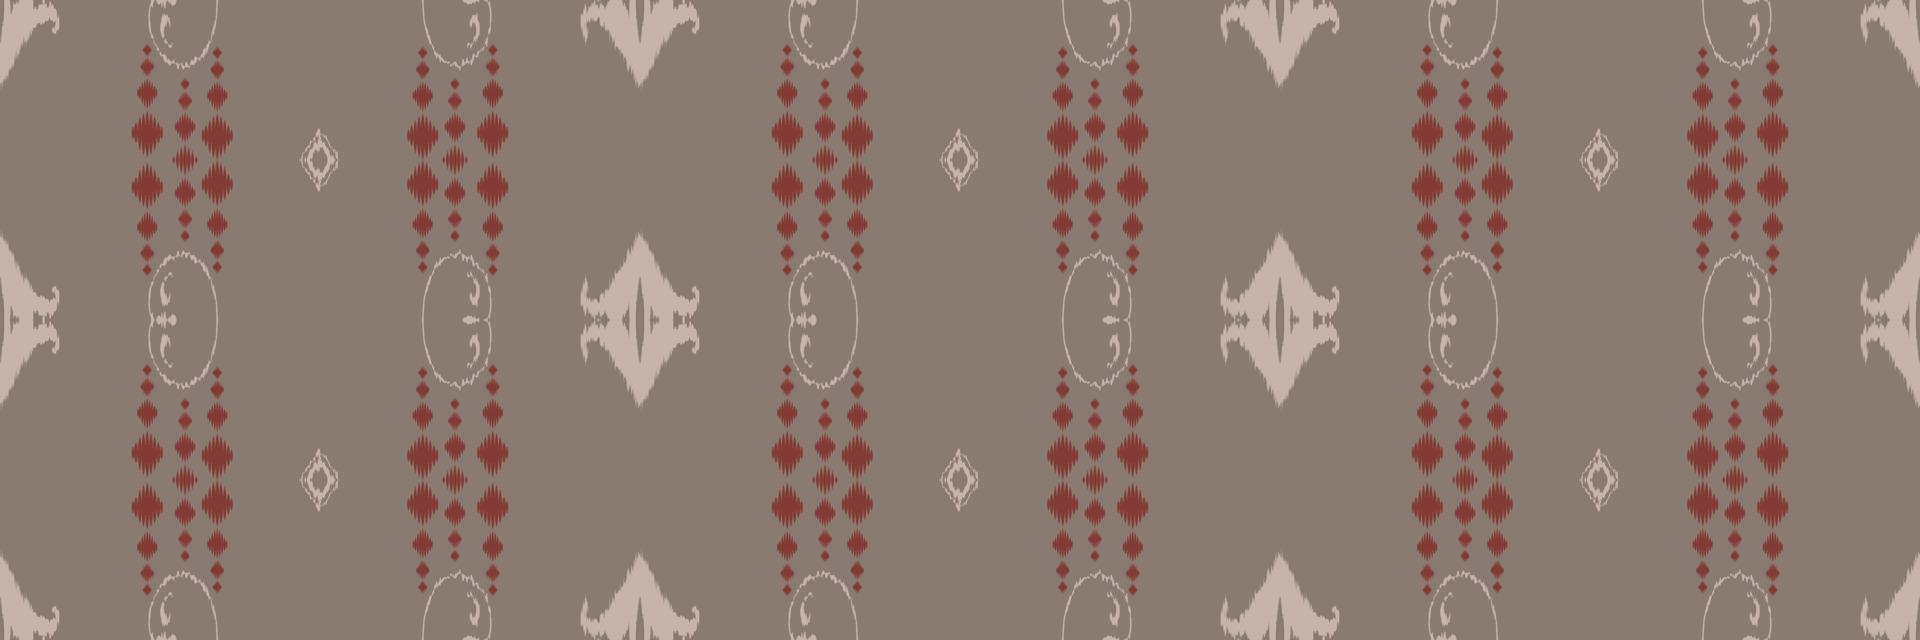 motivo textil batik ikat chevron patrón sin costuras diseño de vector digital para imprimir saree kurti borde de tela símbolos de pincel muestras ropa de fiesta